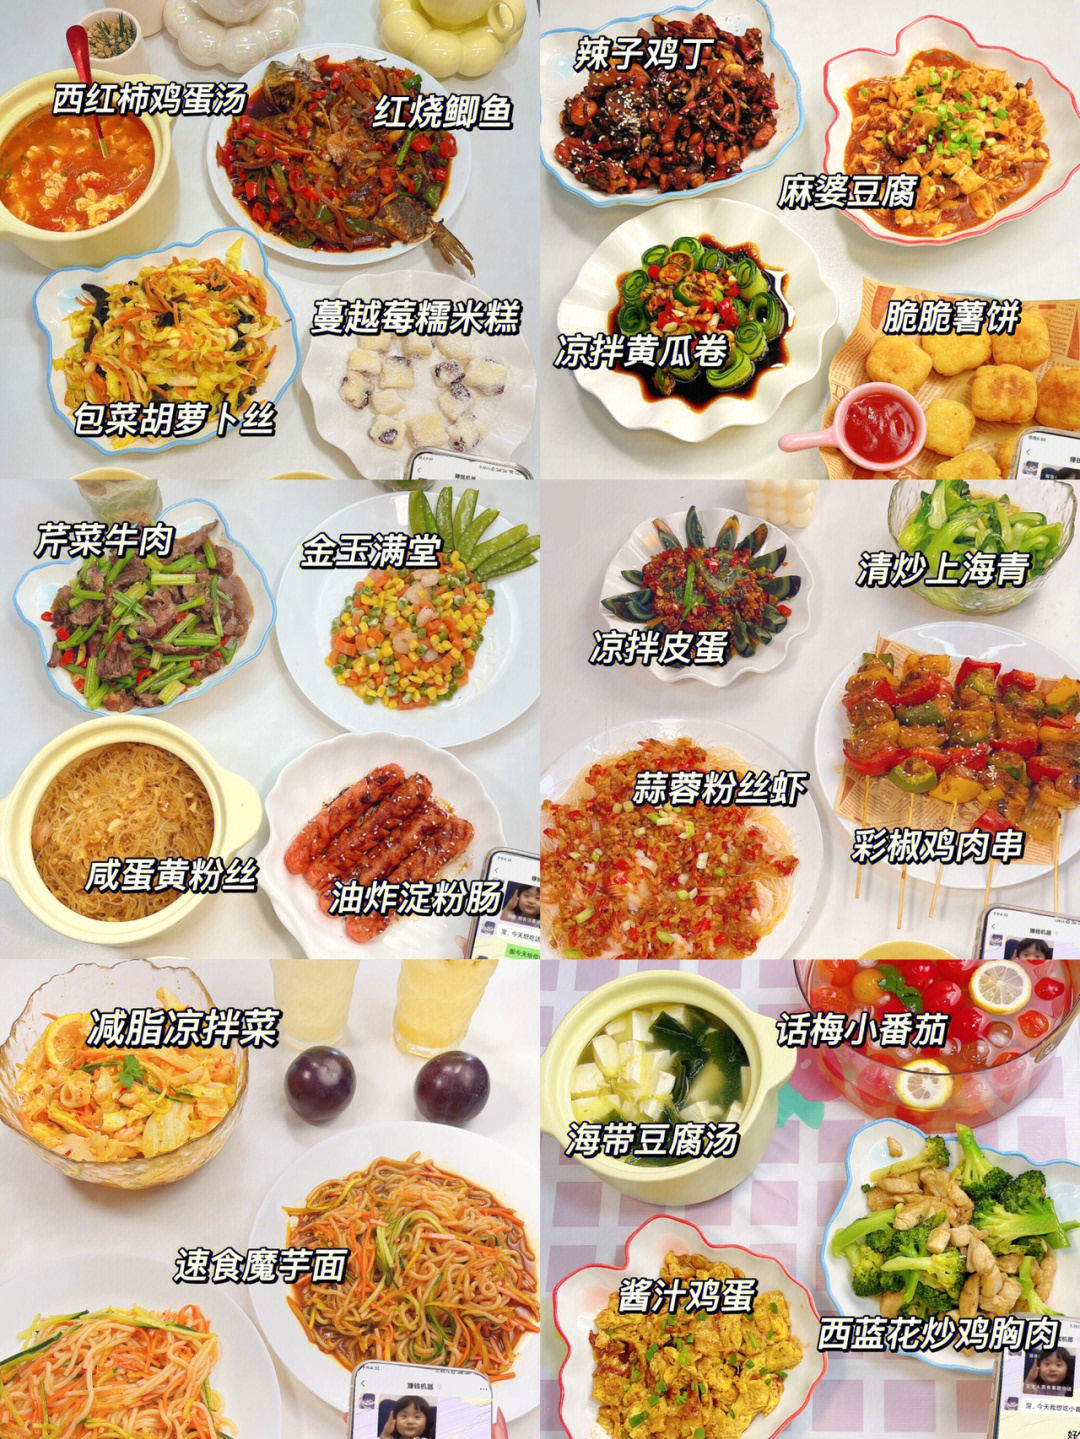 晚餐食谱 清淡 营养图片